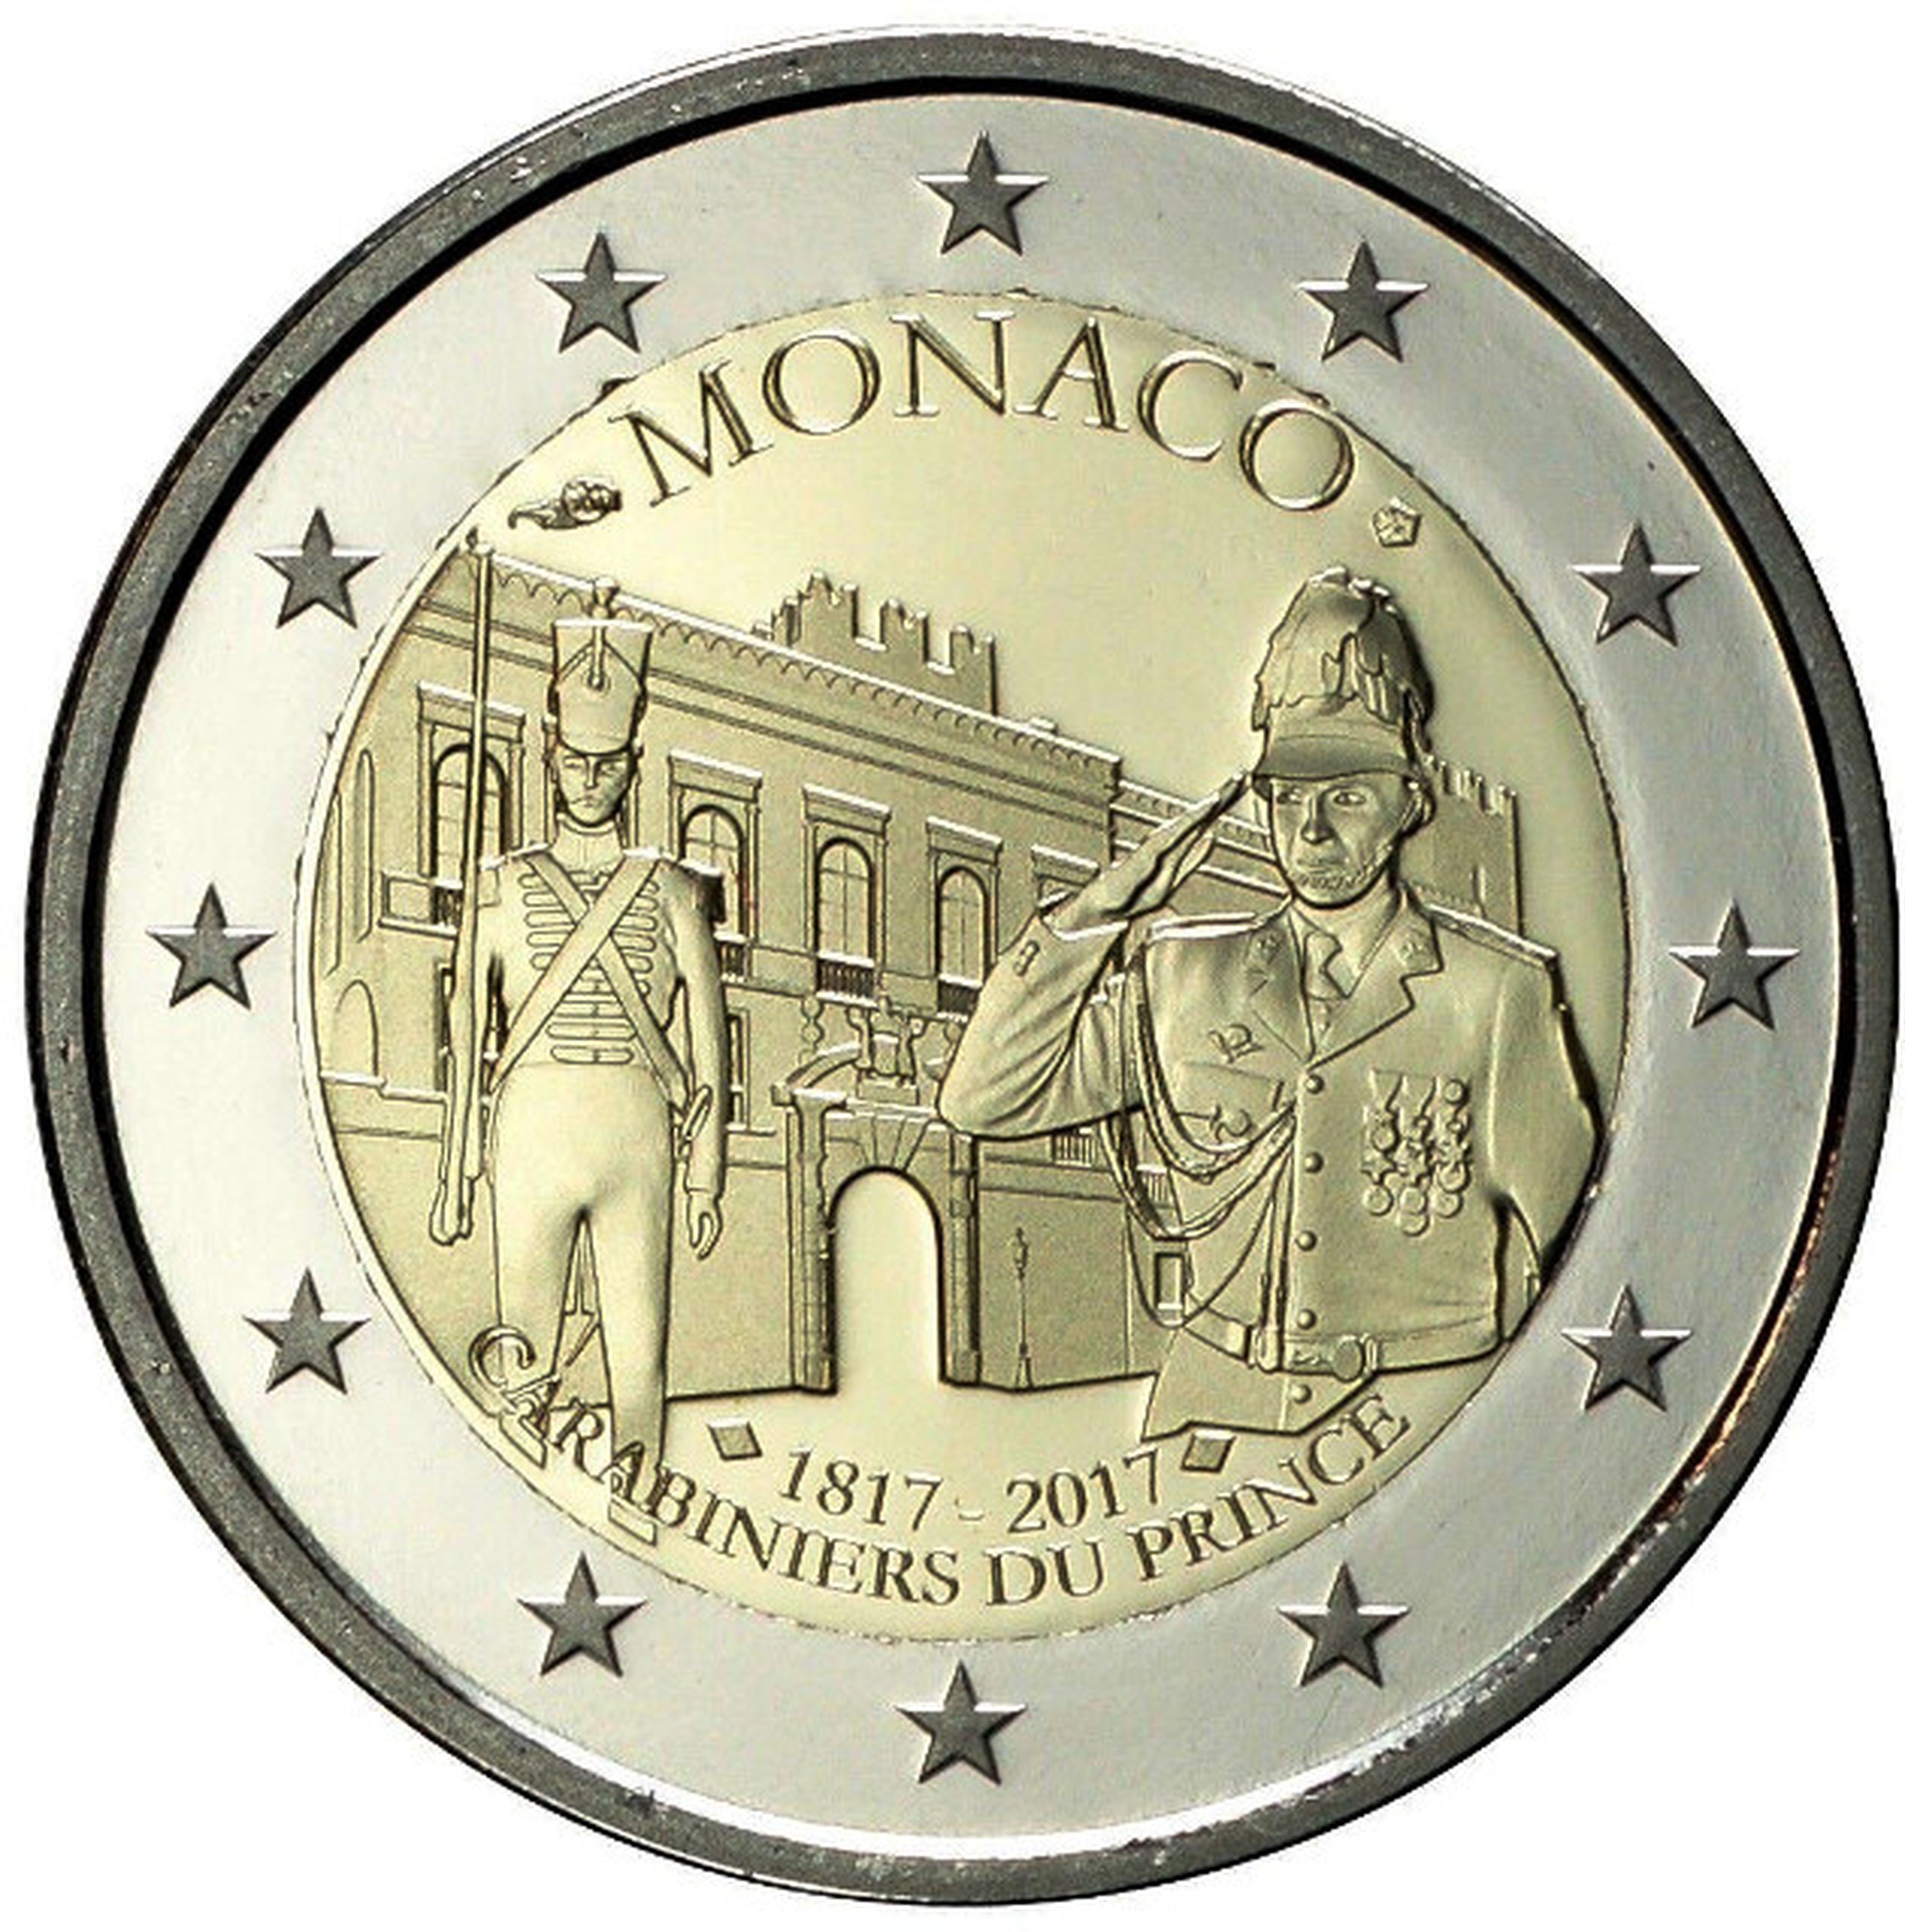 Moneda de 2 euros Mónaco 2017, Compañía de Carabineros del Príncipe